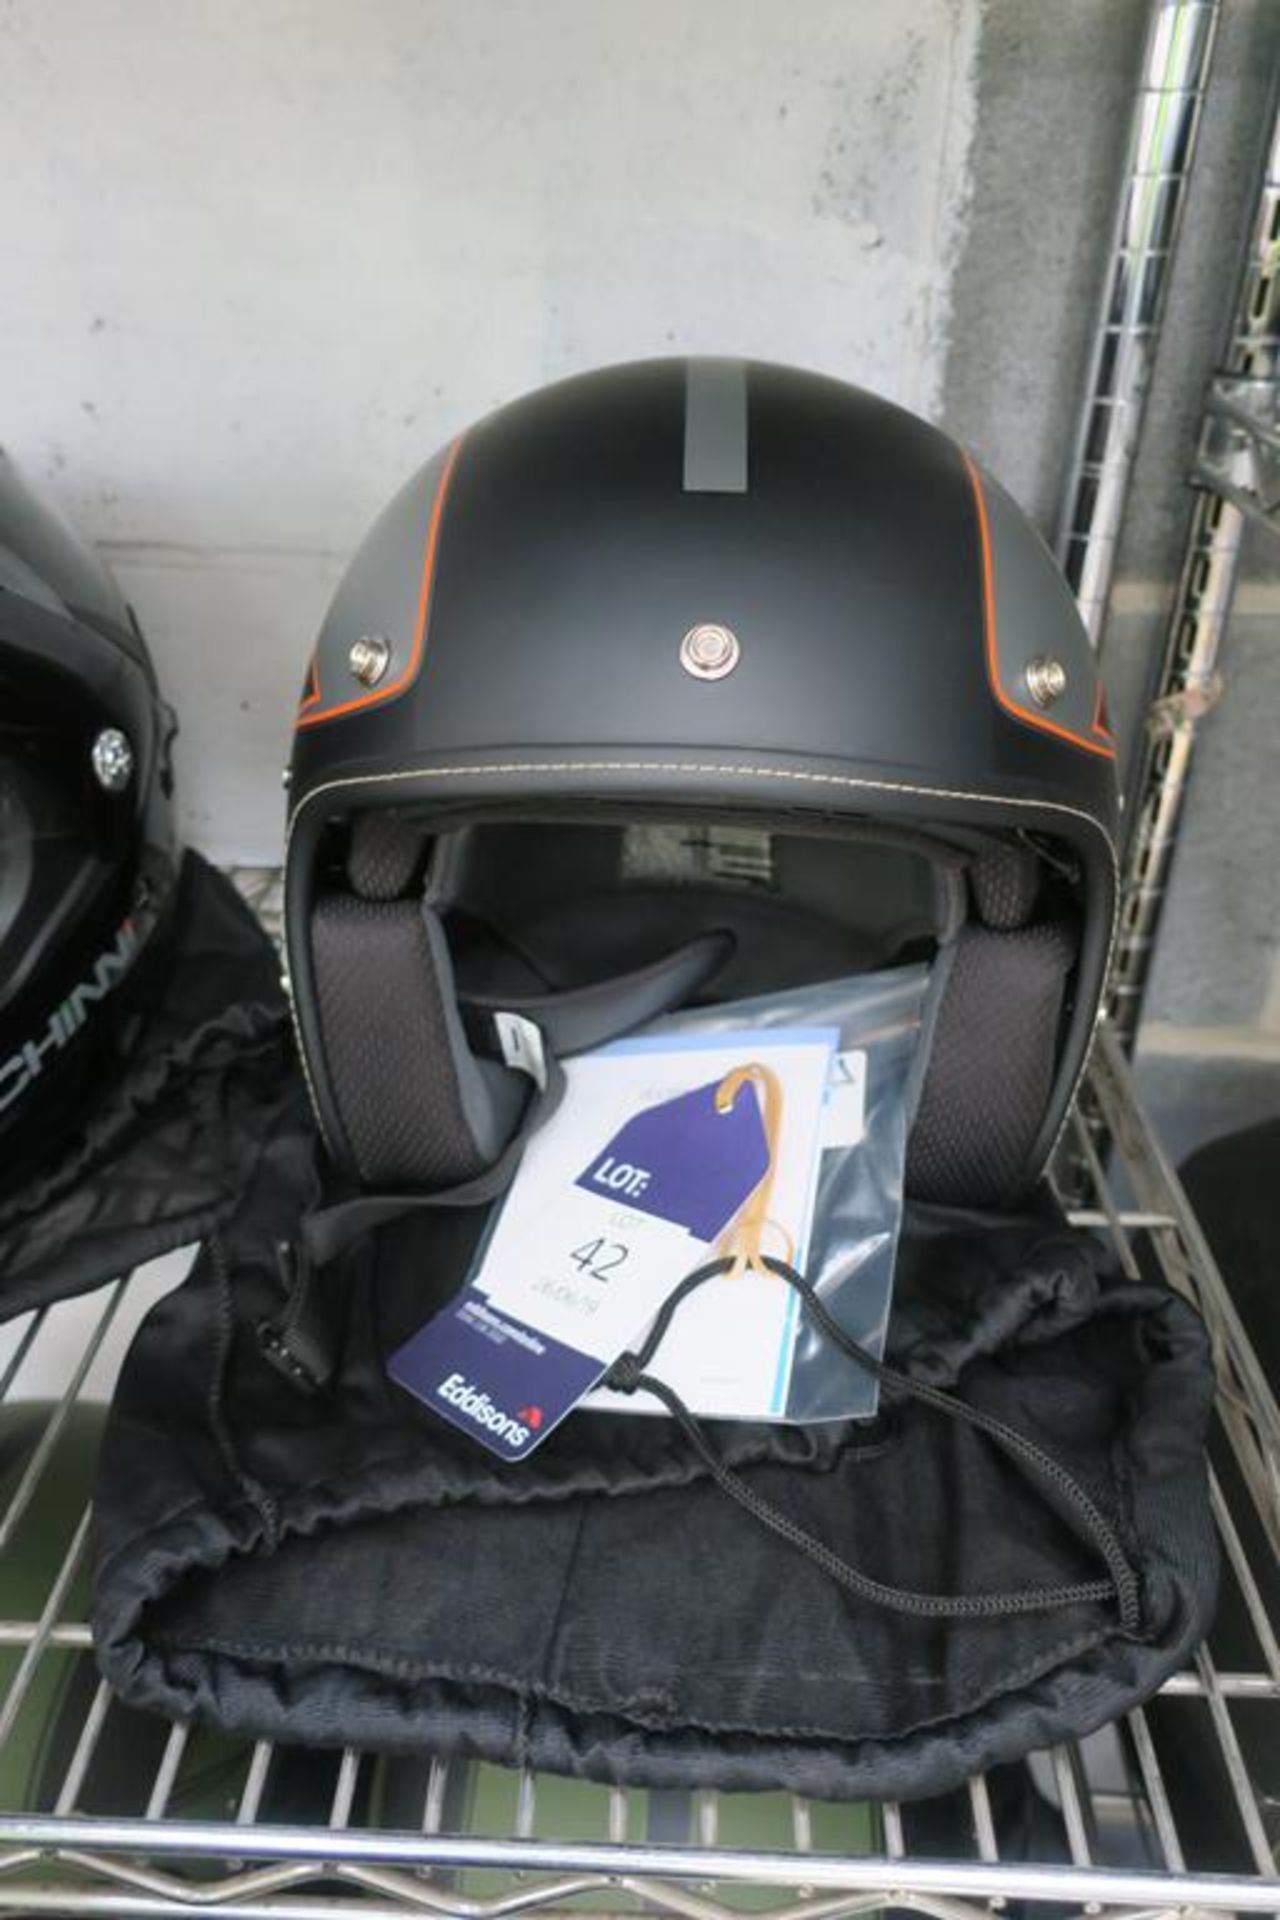 Duchinni D501/380F Size L Helmet comes with Duchinni Bag